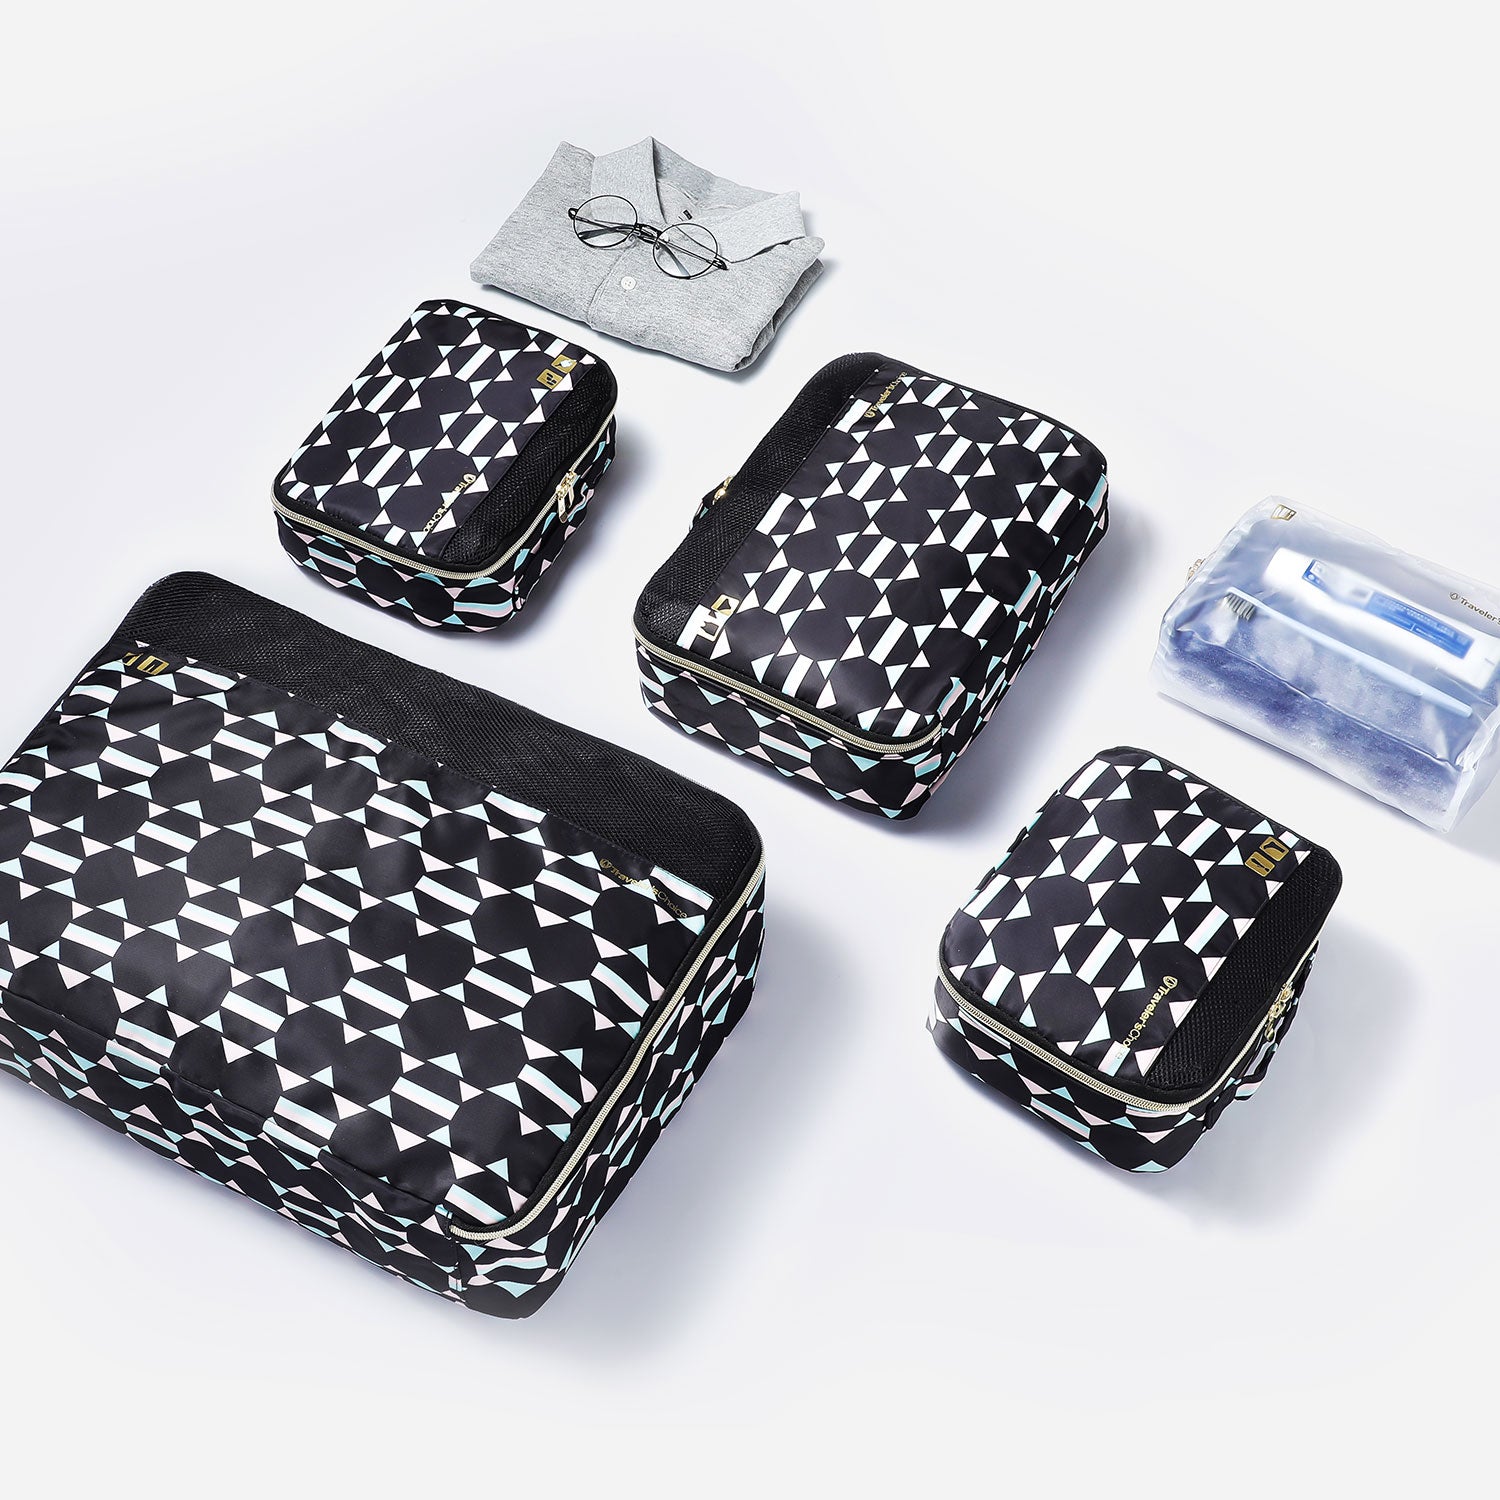 Cloverland Packing Cubes 5 Piece Set – Traveler's Choice